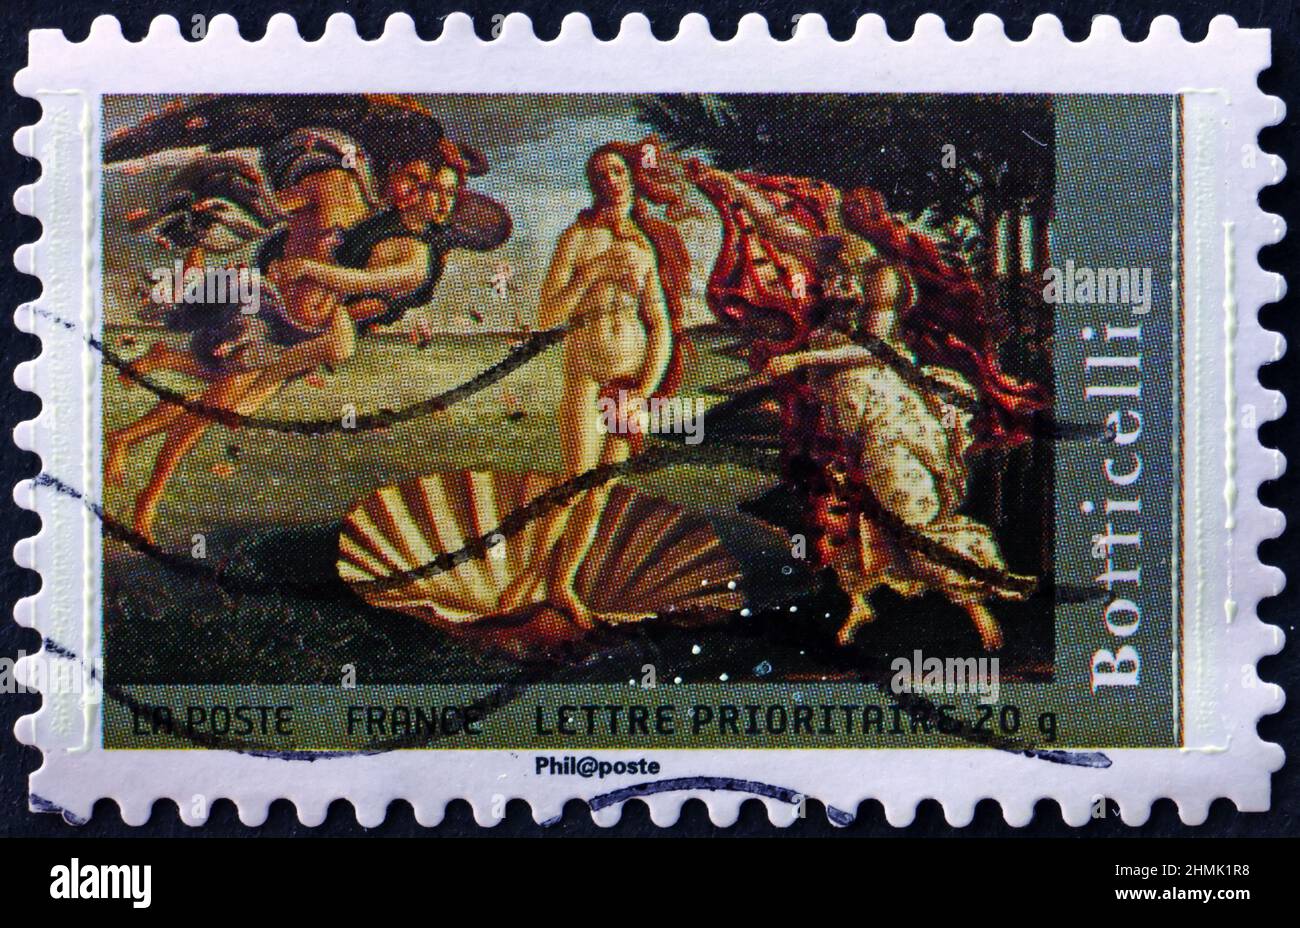 FRANCE - VERS 2008 : un timbre imprimé en France montre la naissance de Vénus, peinture de Sandro Botticelli, peintre italien, vers 2008 Banque D'Images